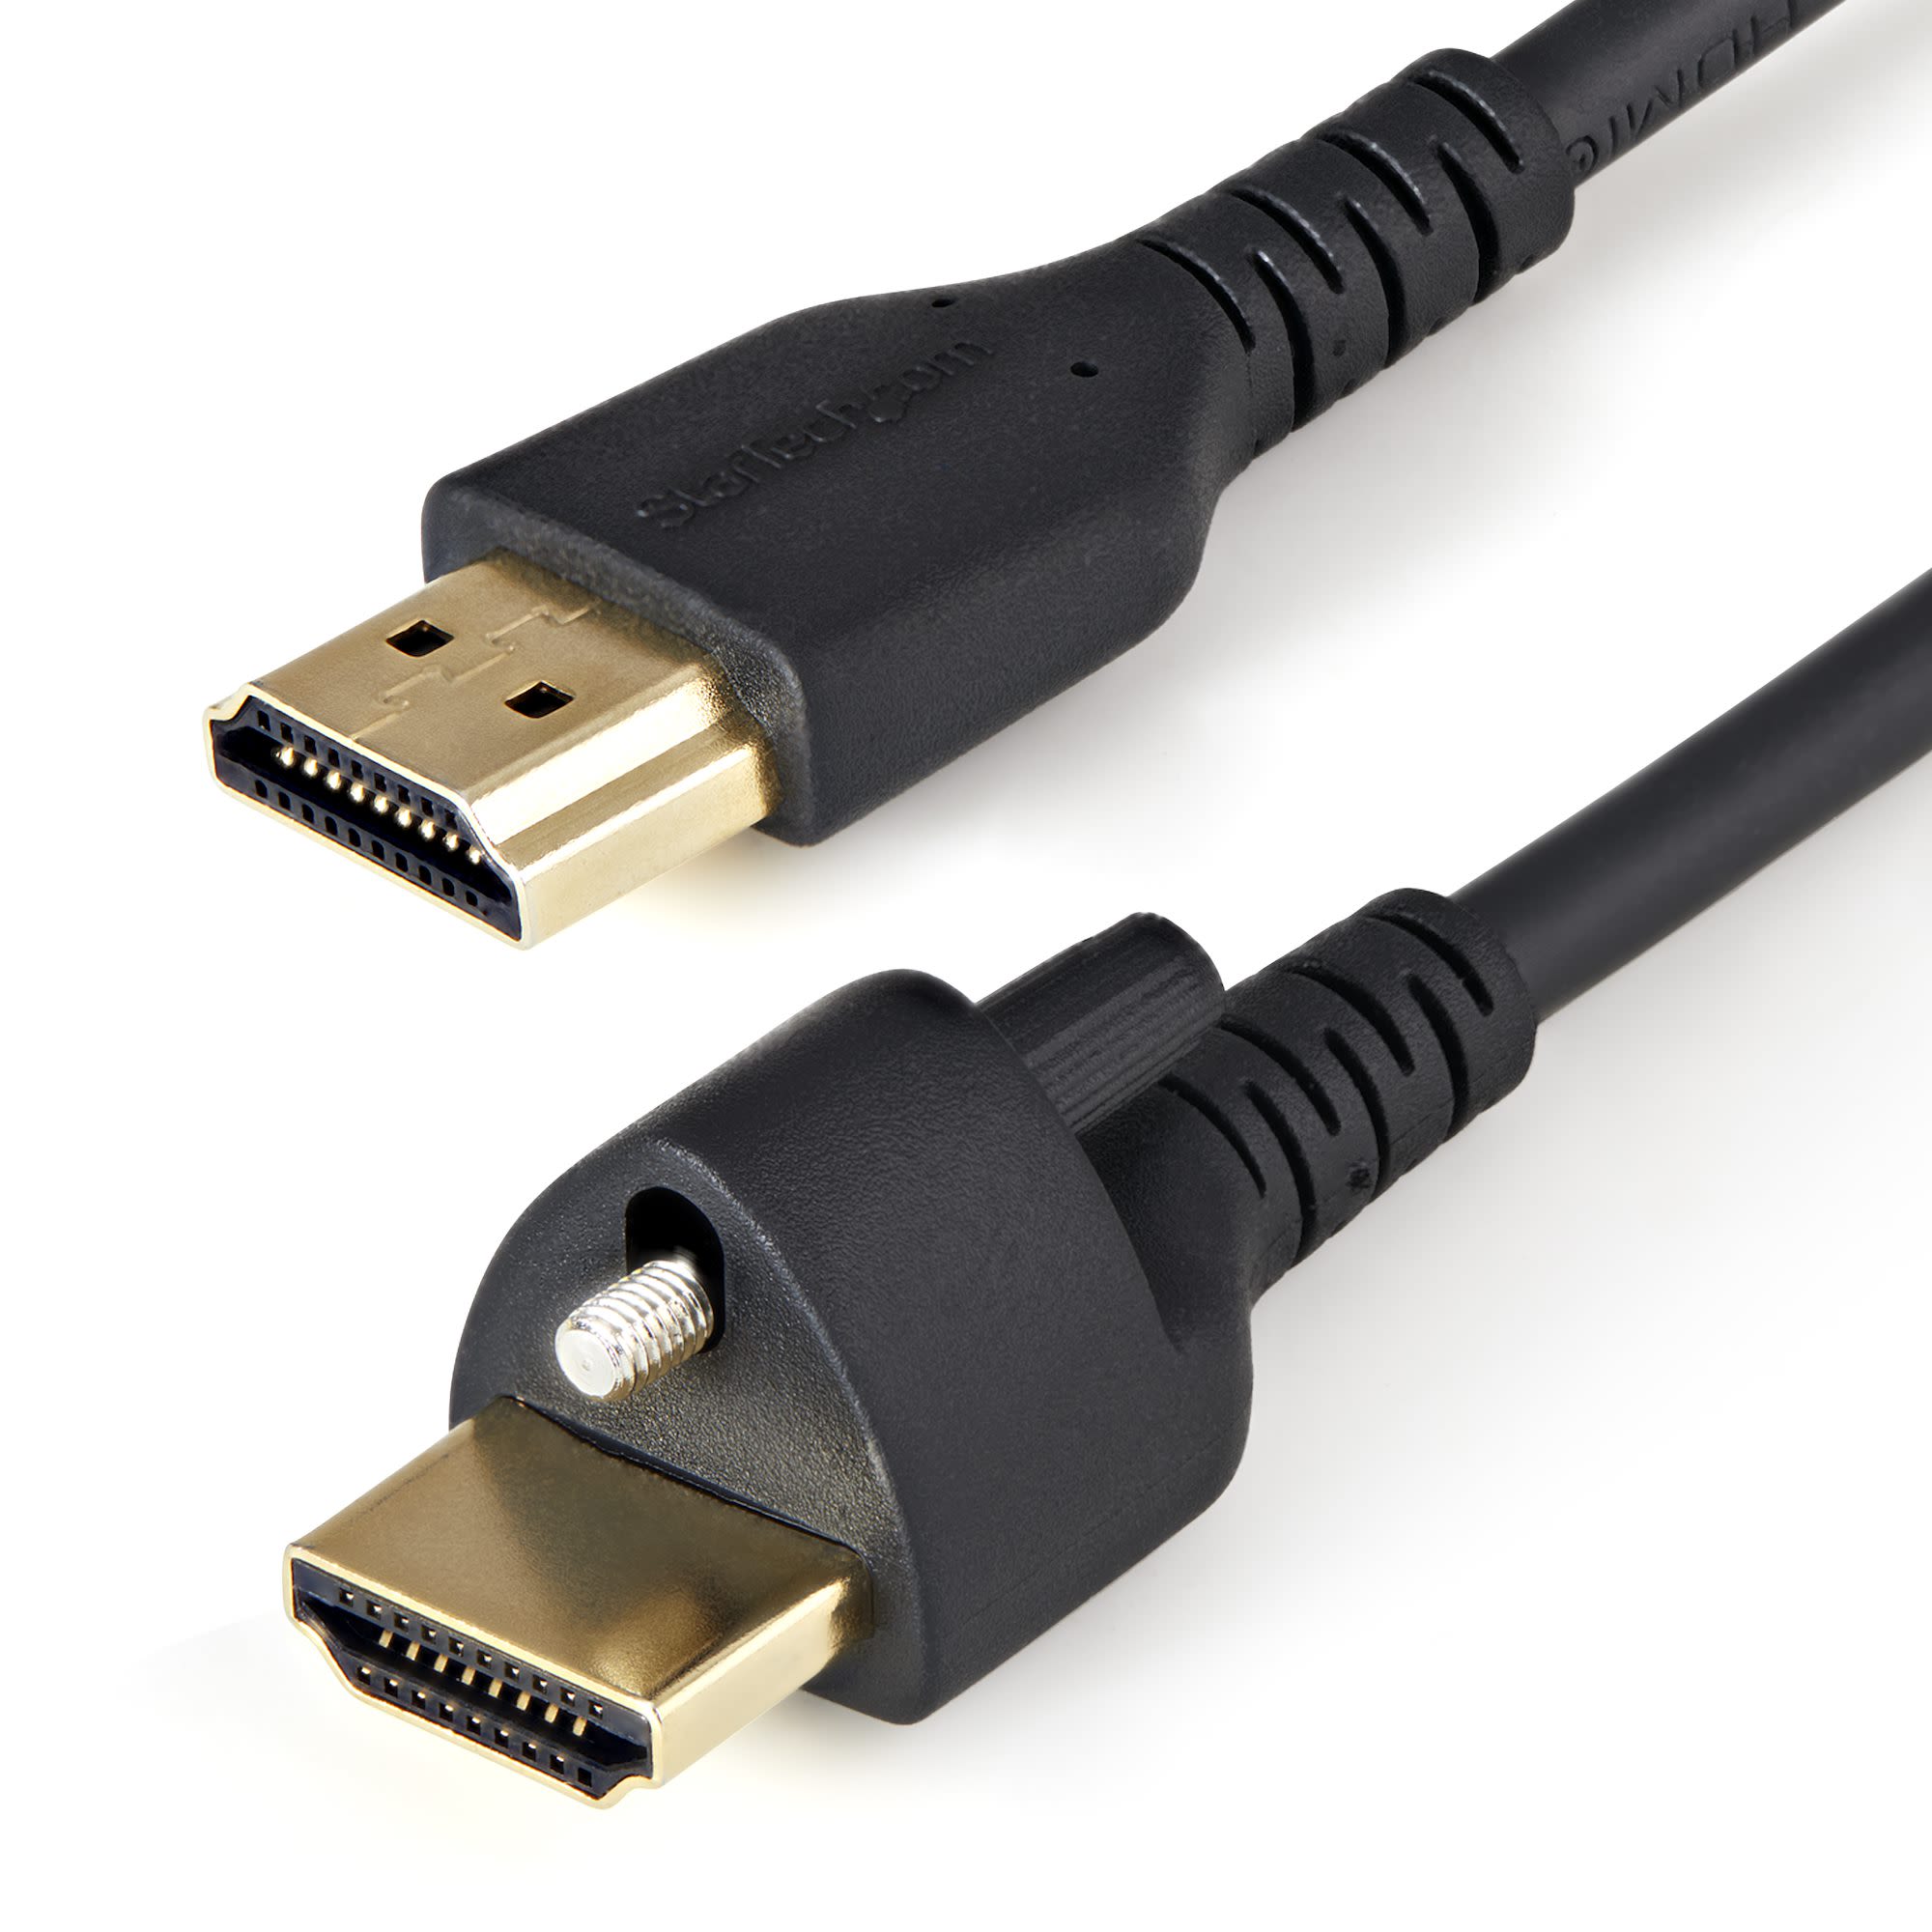 StarTech.com 4K Male HDMI to Male HDMI Cable, 1m